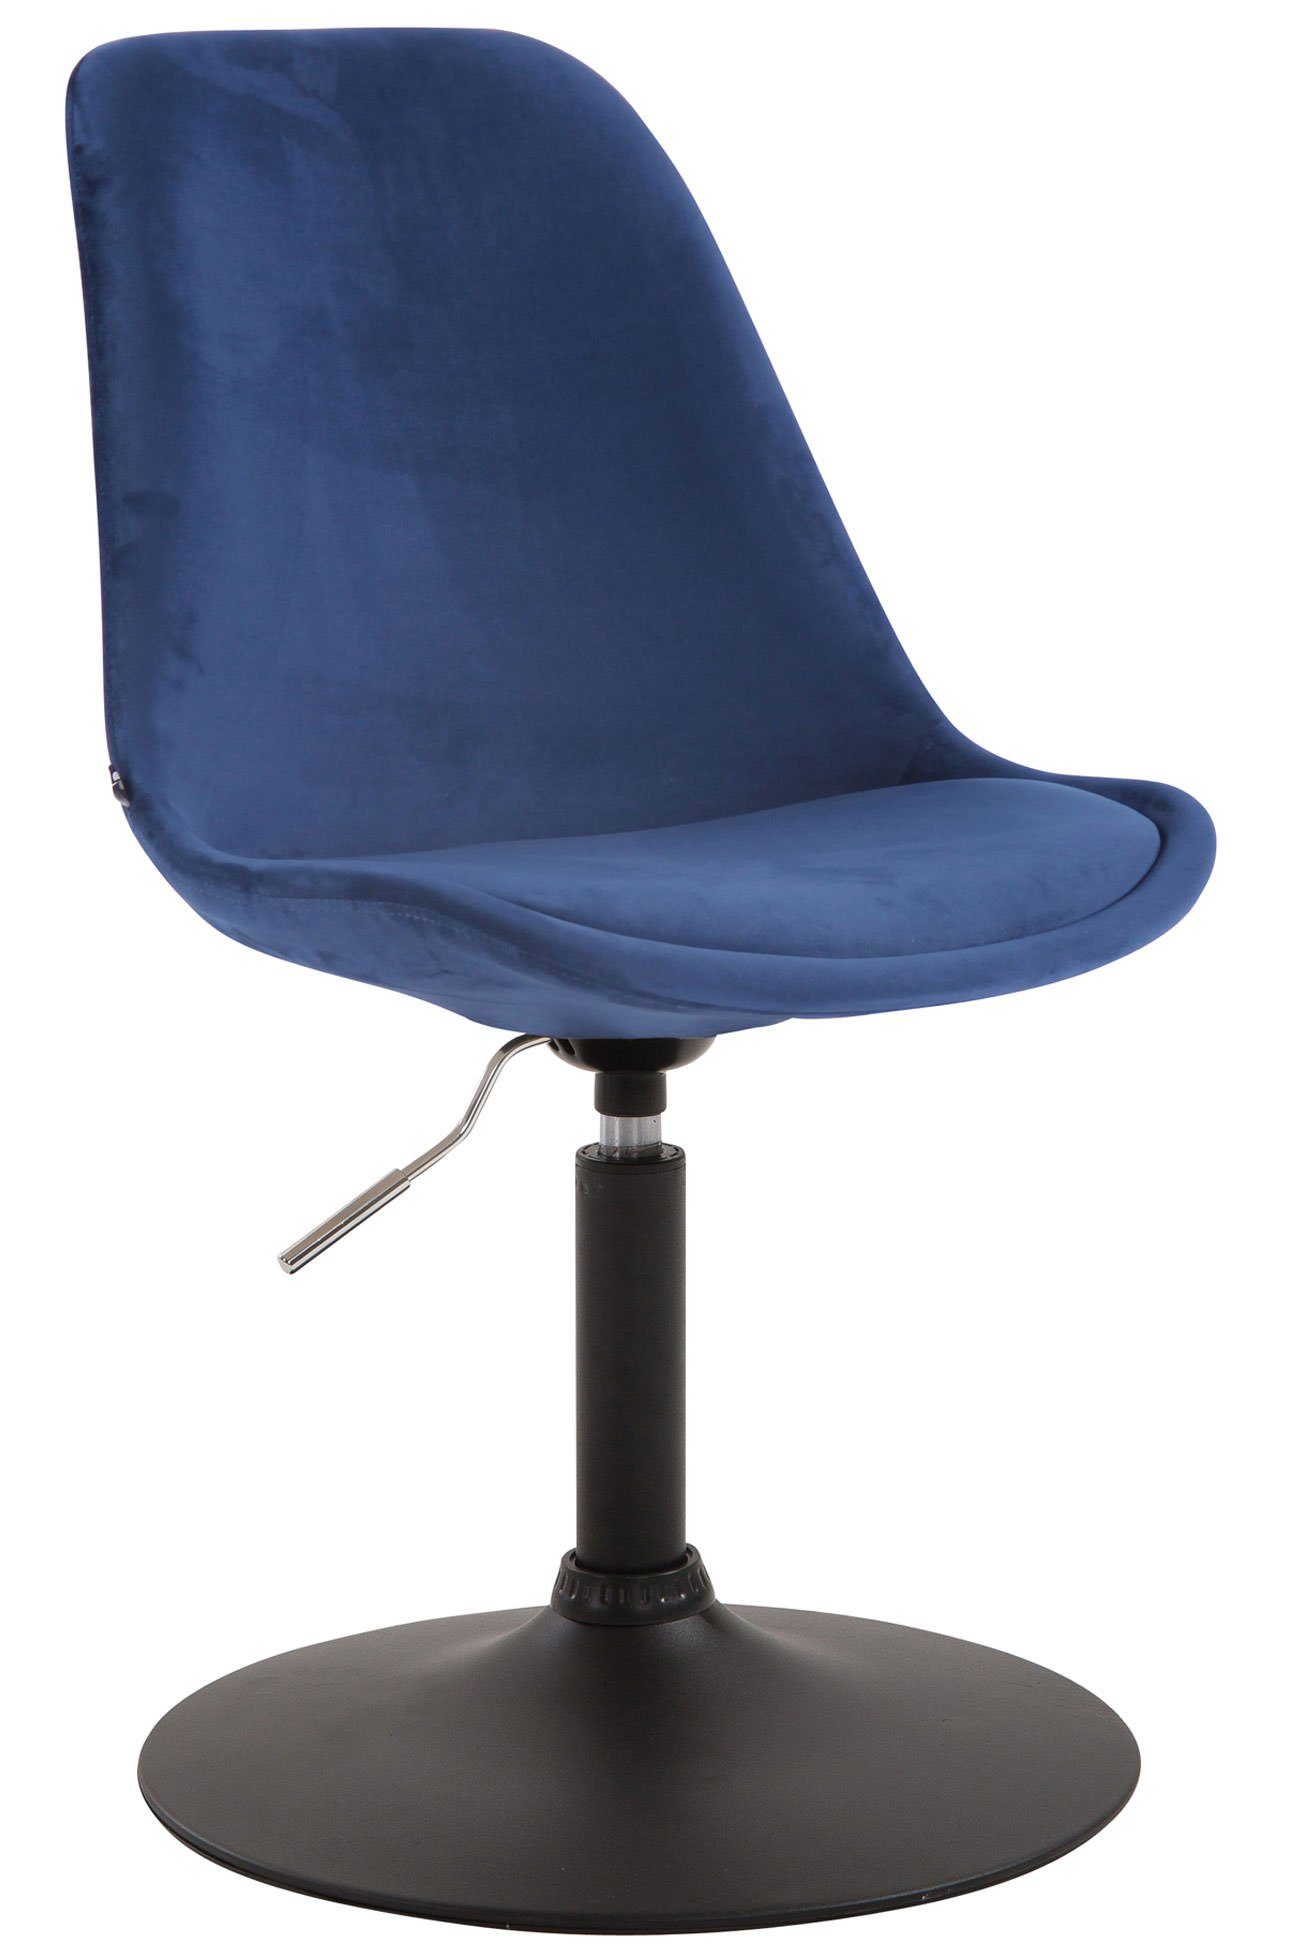 TPFLiving Esszimmerstuhl Mavic mit hochwertig gepolsterter Sitzfläche - Konferenzstuhl (Küchenstuhl - Esstischstuhl - Wohnzimmerstuhl - Polsterstuhl), Gestell: Metall schwarz - Sitzfläche: Samt blau